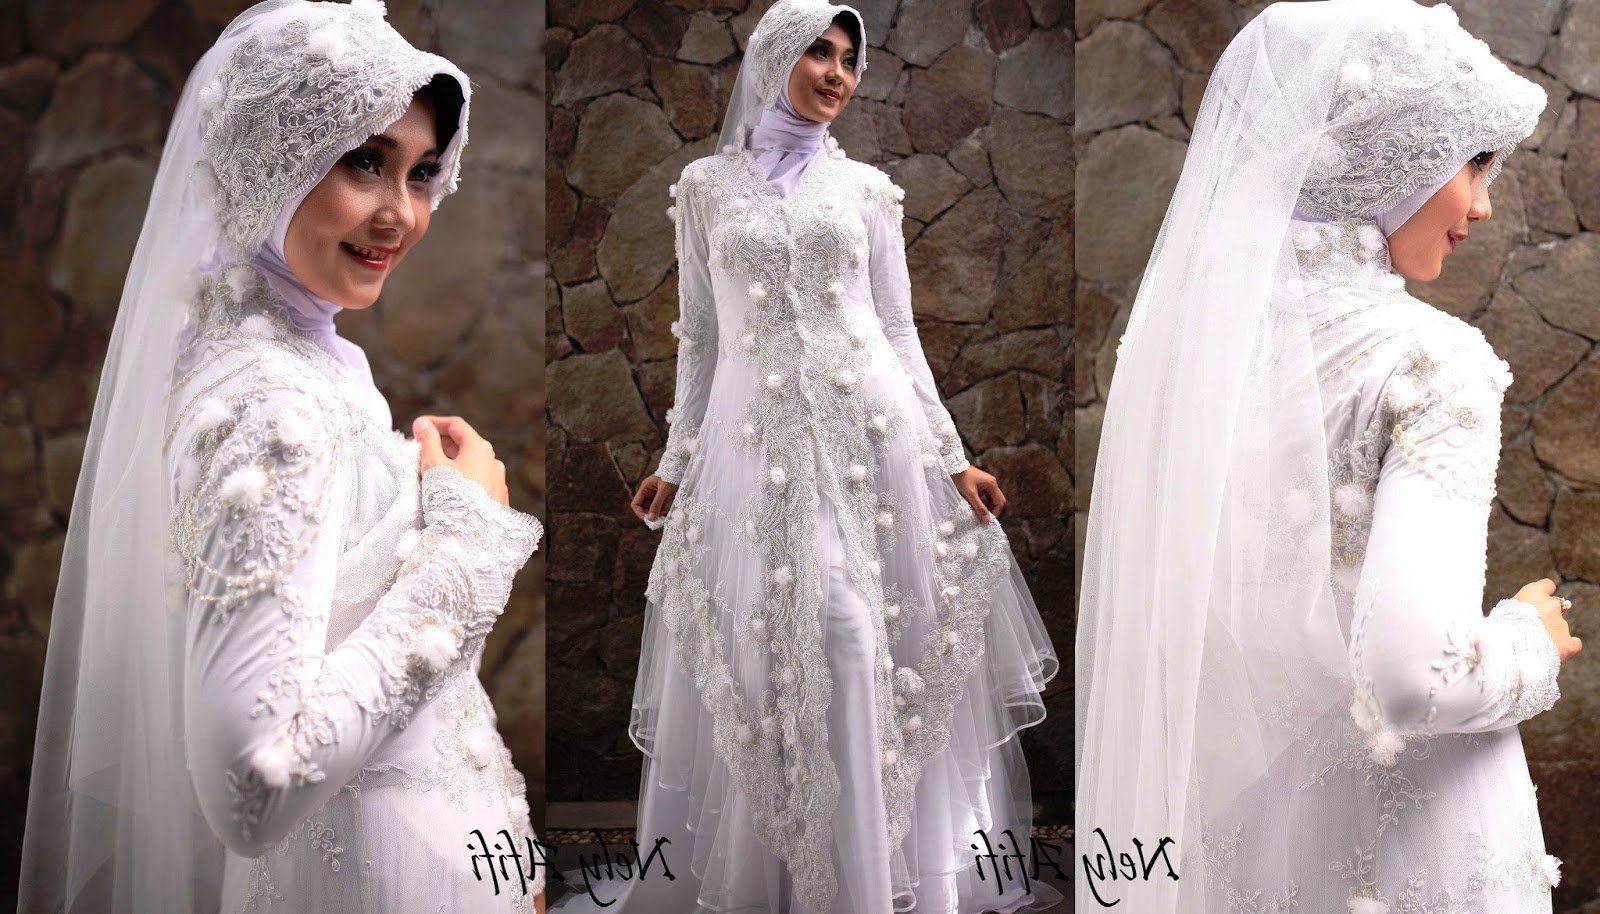 Model Inspirasi Baju Pengantin Muslimah 9fdy 43 Inspirasi Terpopuler Baju Pengantin Muslim Sederhana Putih